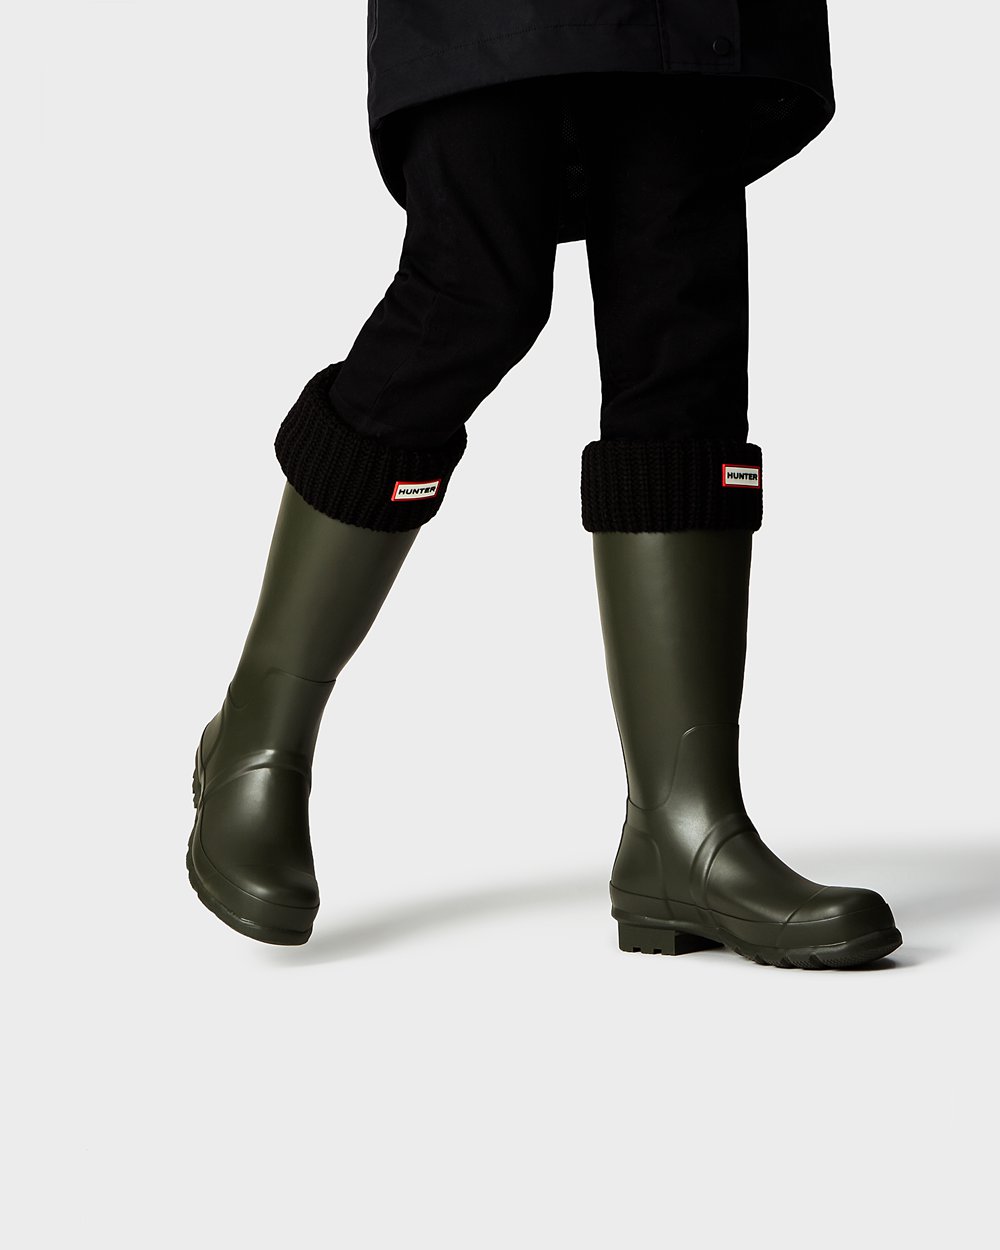 Mens Tall Rain Boots - Hunter Original (30MRNLOEC) - Dark Olive